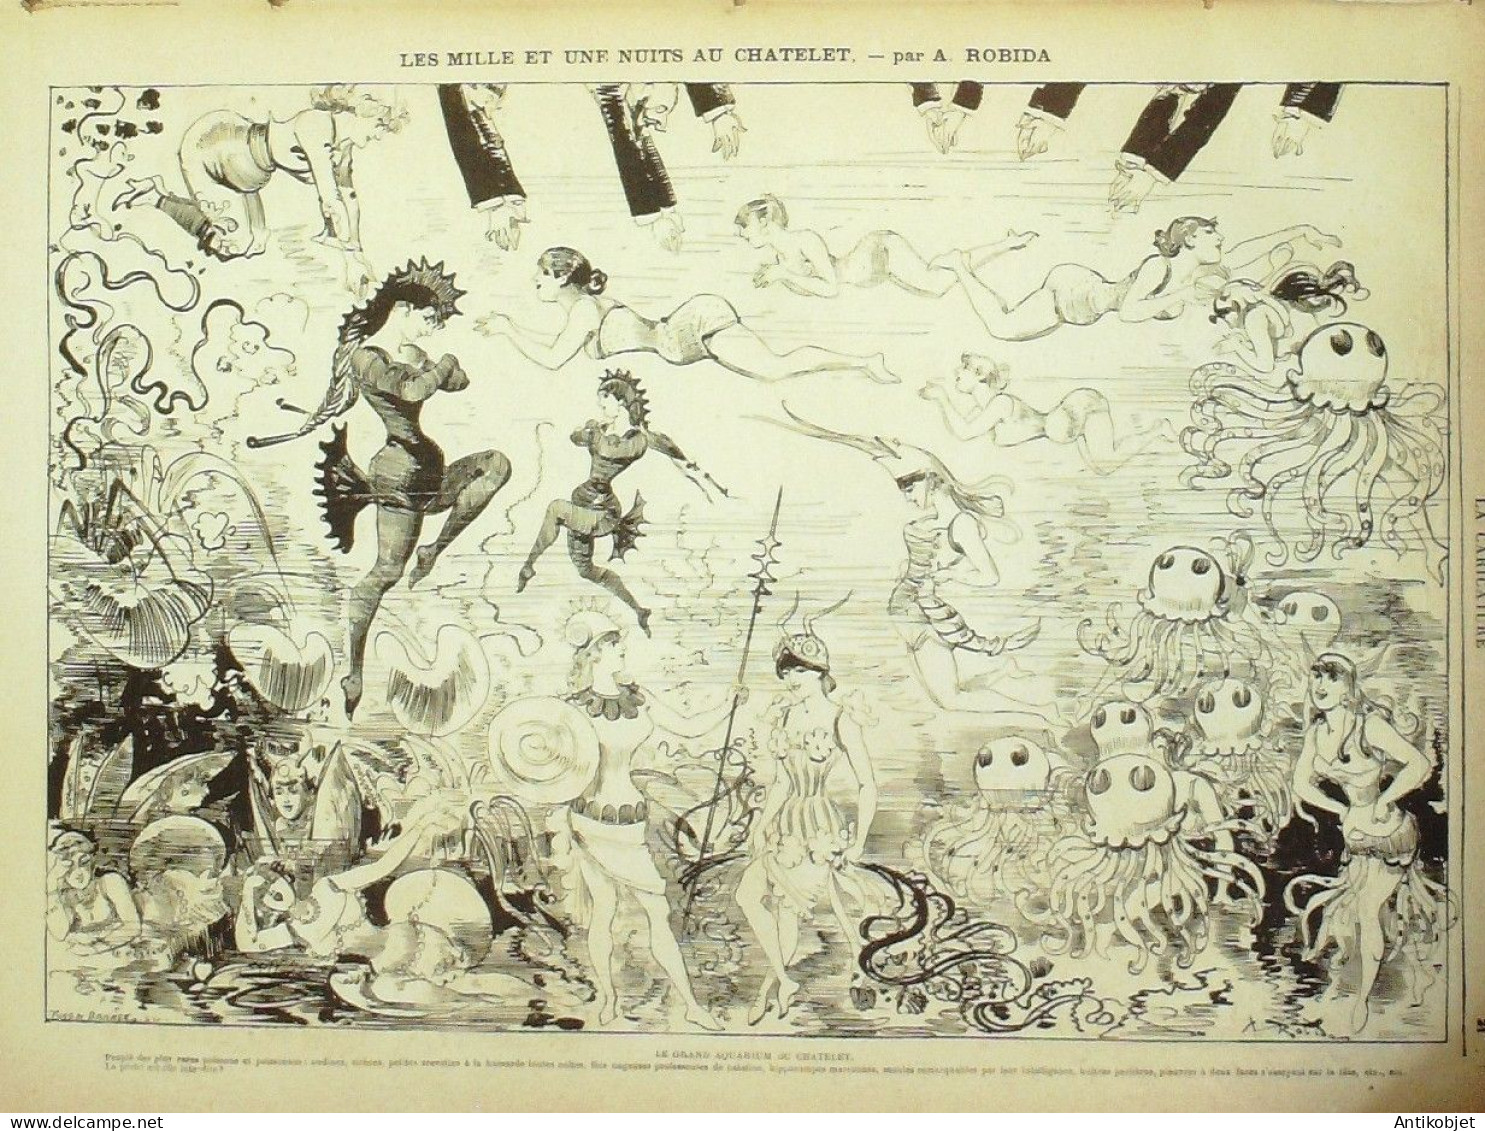 La Caricature 1882 N°107 Mille Et Une Nuits Robida Loys Gino - Revues Anciennes - Avant 1900